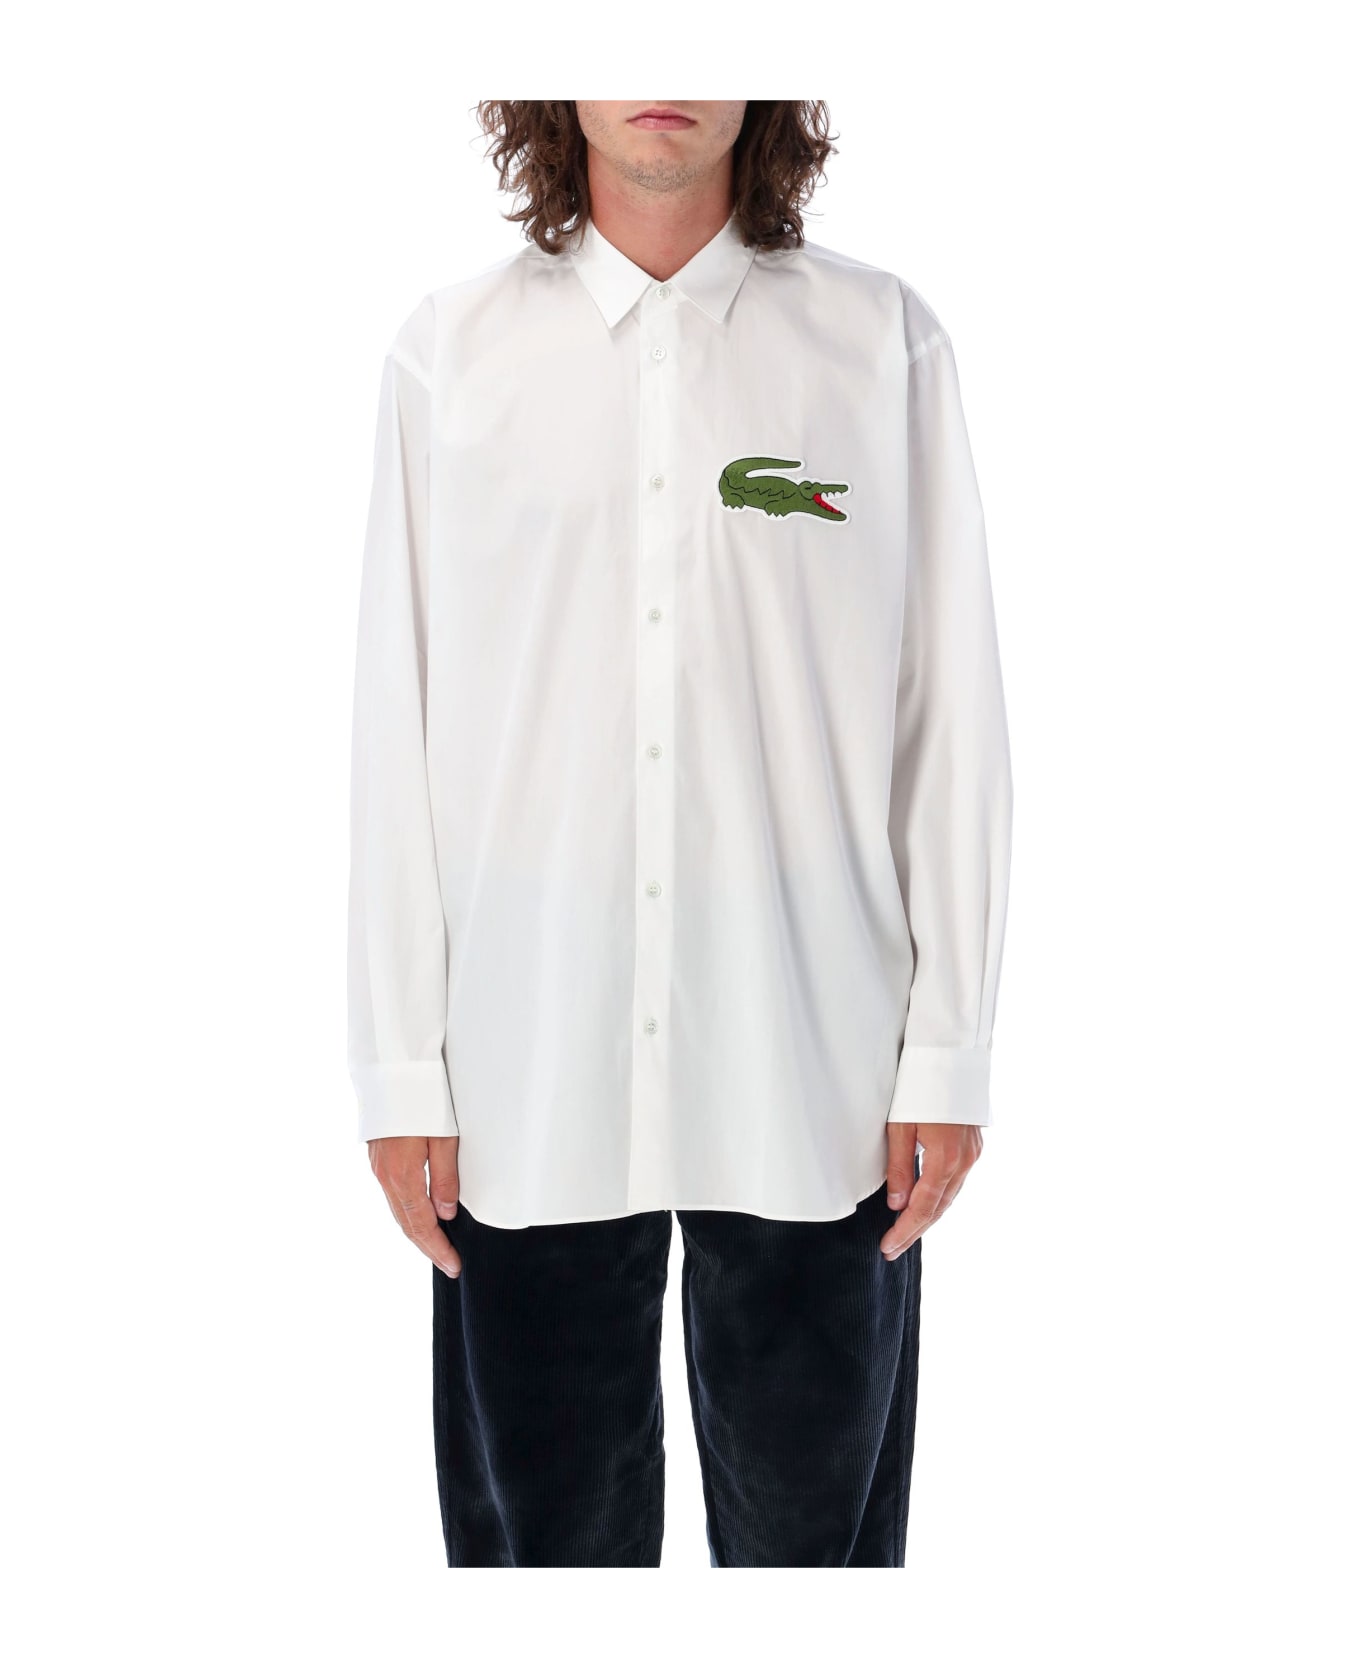 Comme des Garçons Shirt Big Croco Lacoste Shirt - WHITE シャツ